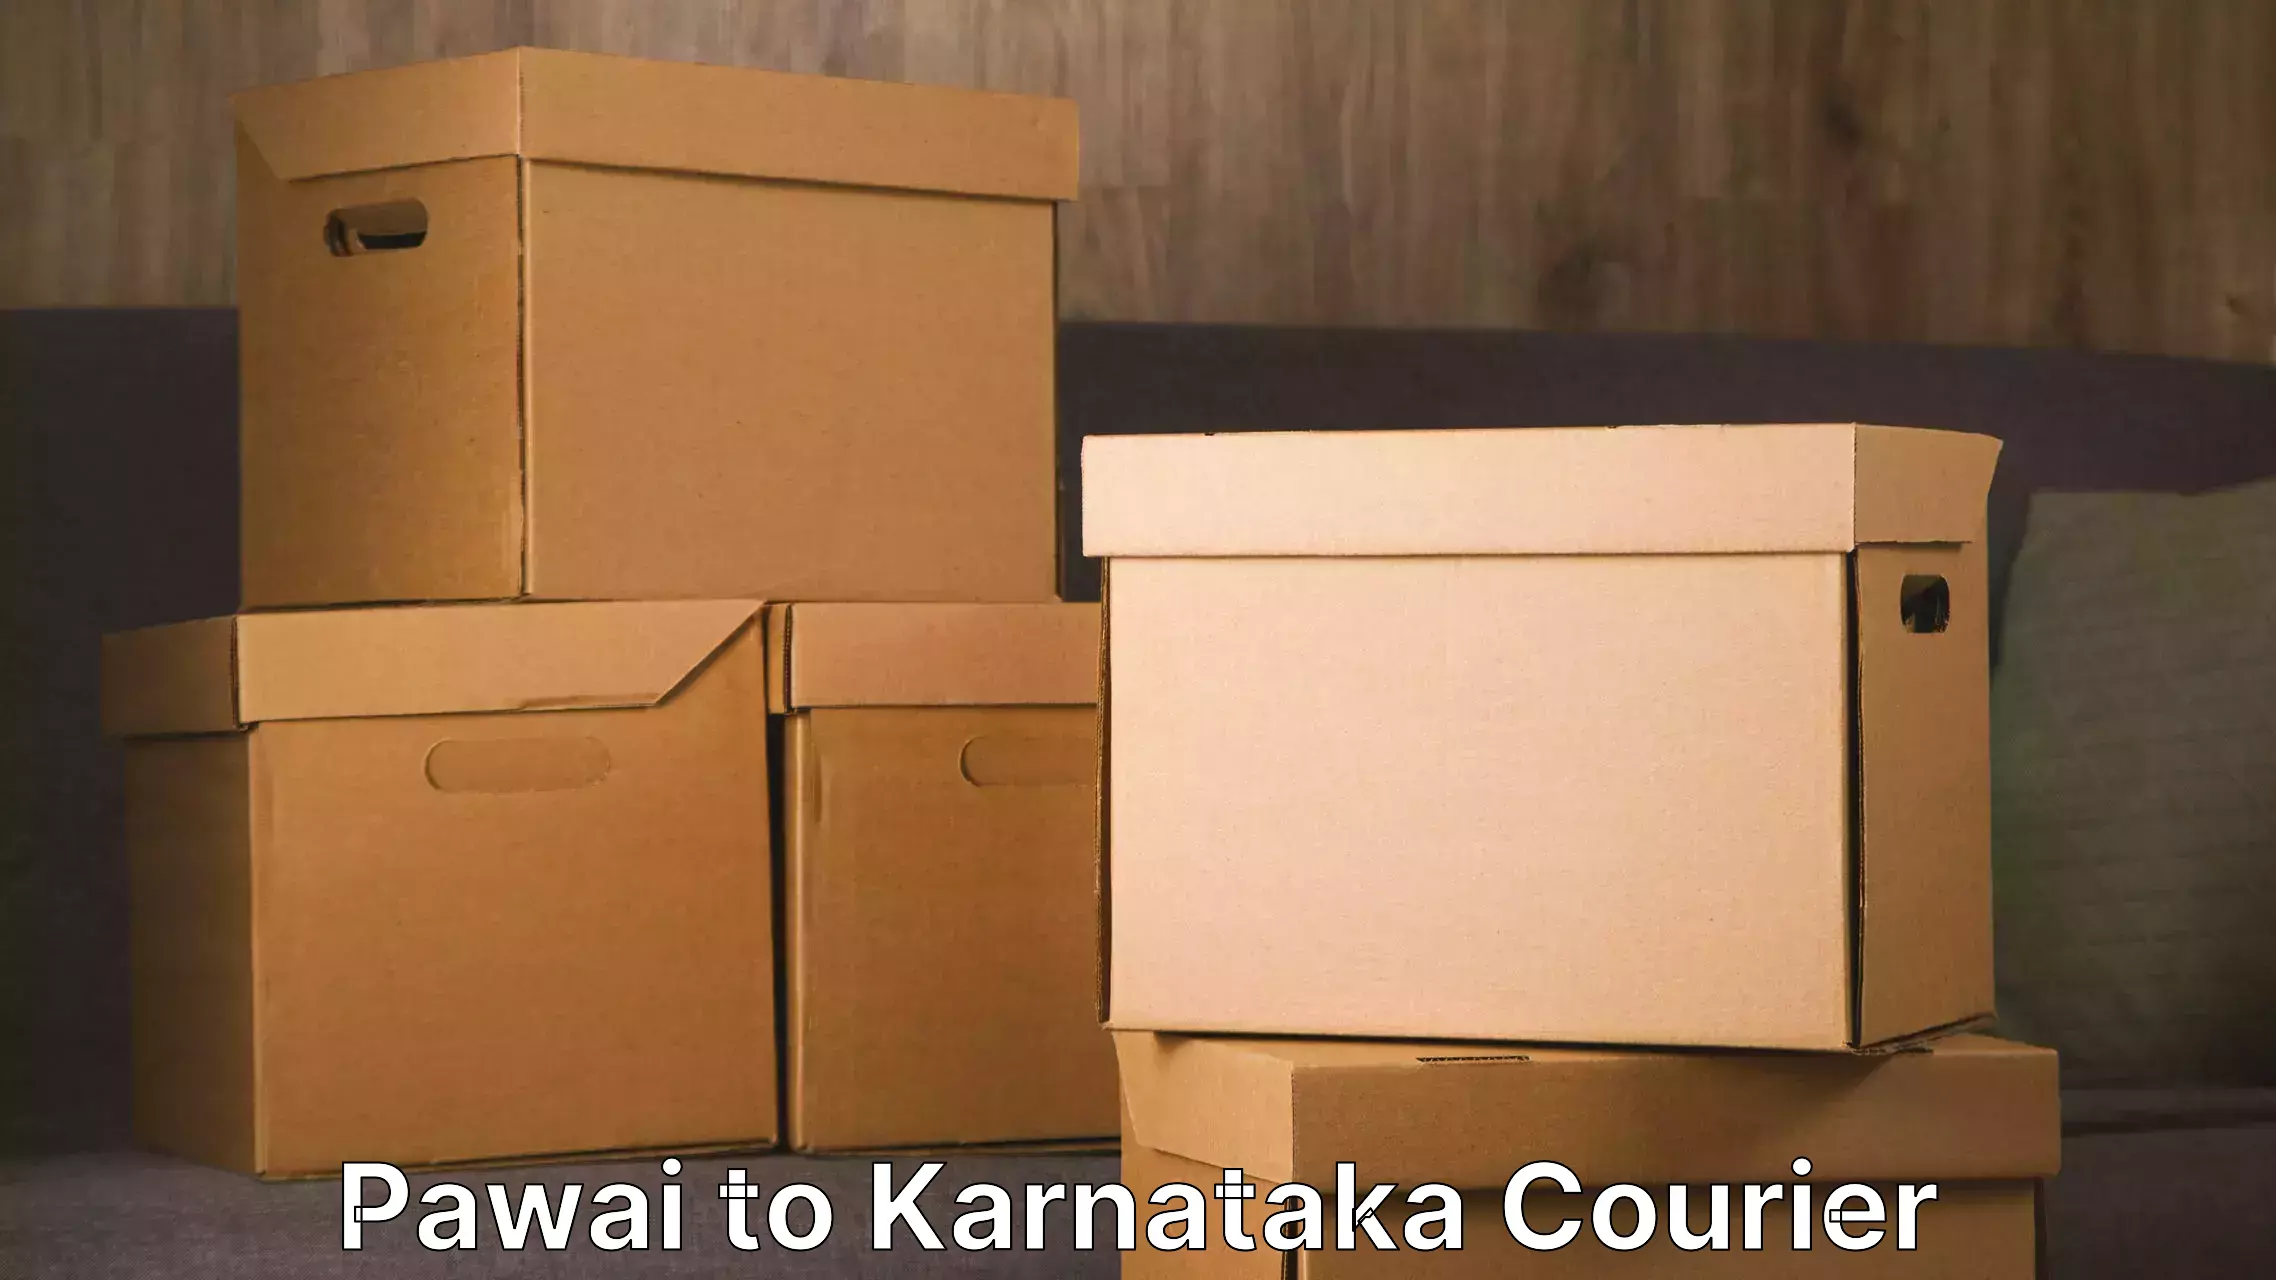 Skilled furniture transporters Pawai to Karnataka